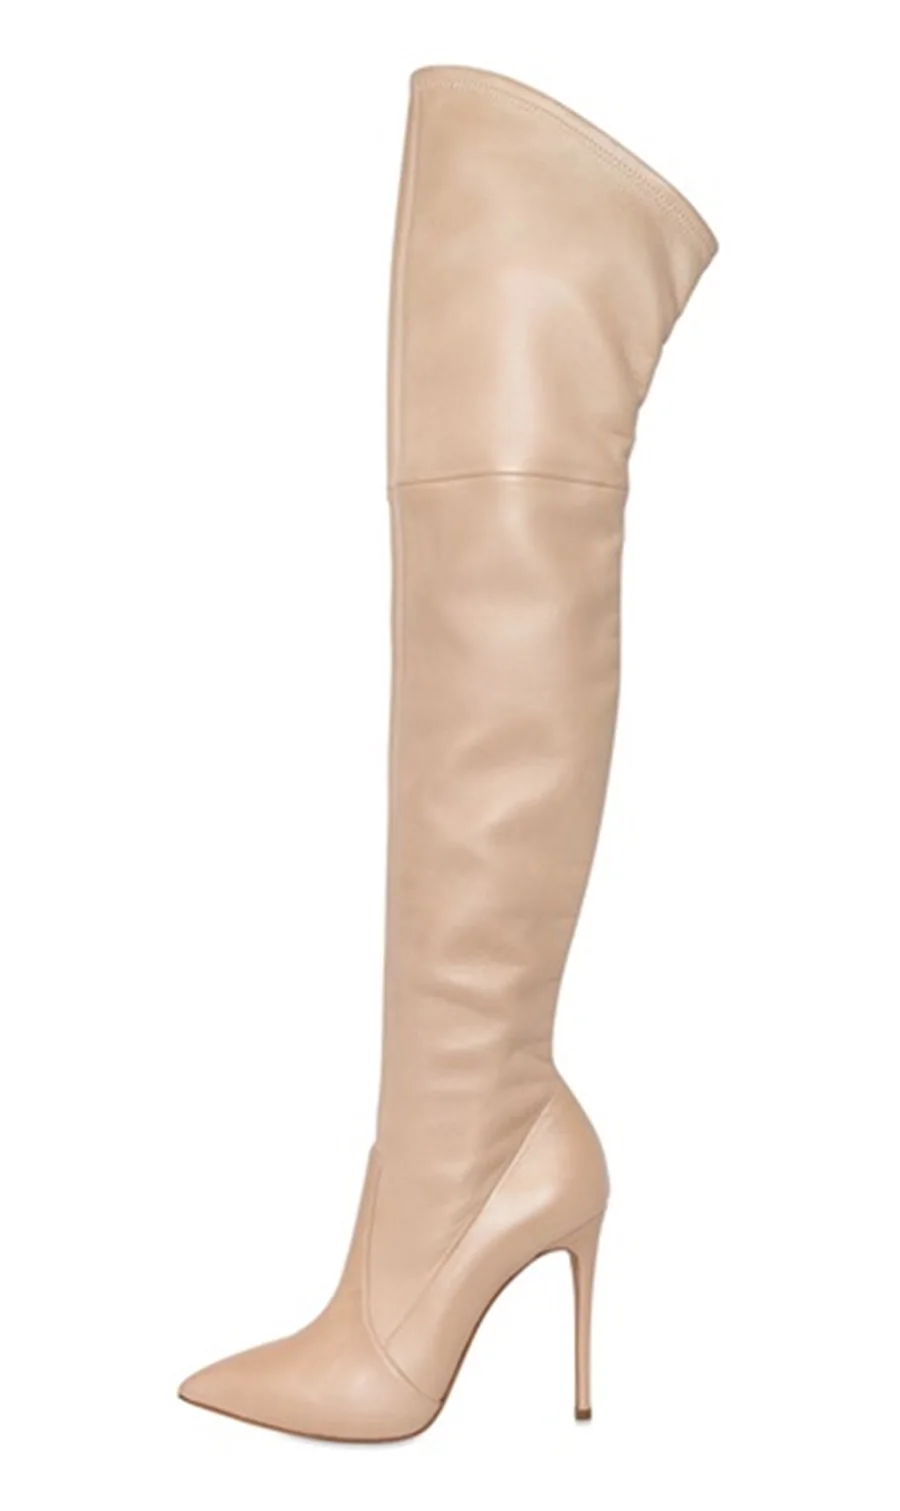 Пикантные женские модельные сапоги из блестящей лакированной кожи золотистого цвета; высокие сапоги с острым носком на шпильках; Цвет черный, телесный; ботфорты; туфли-лодочки